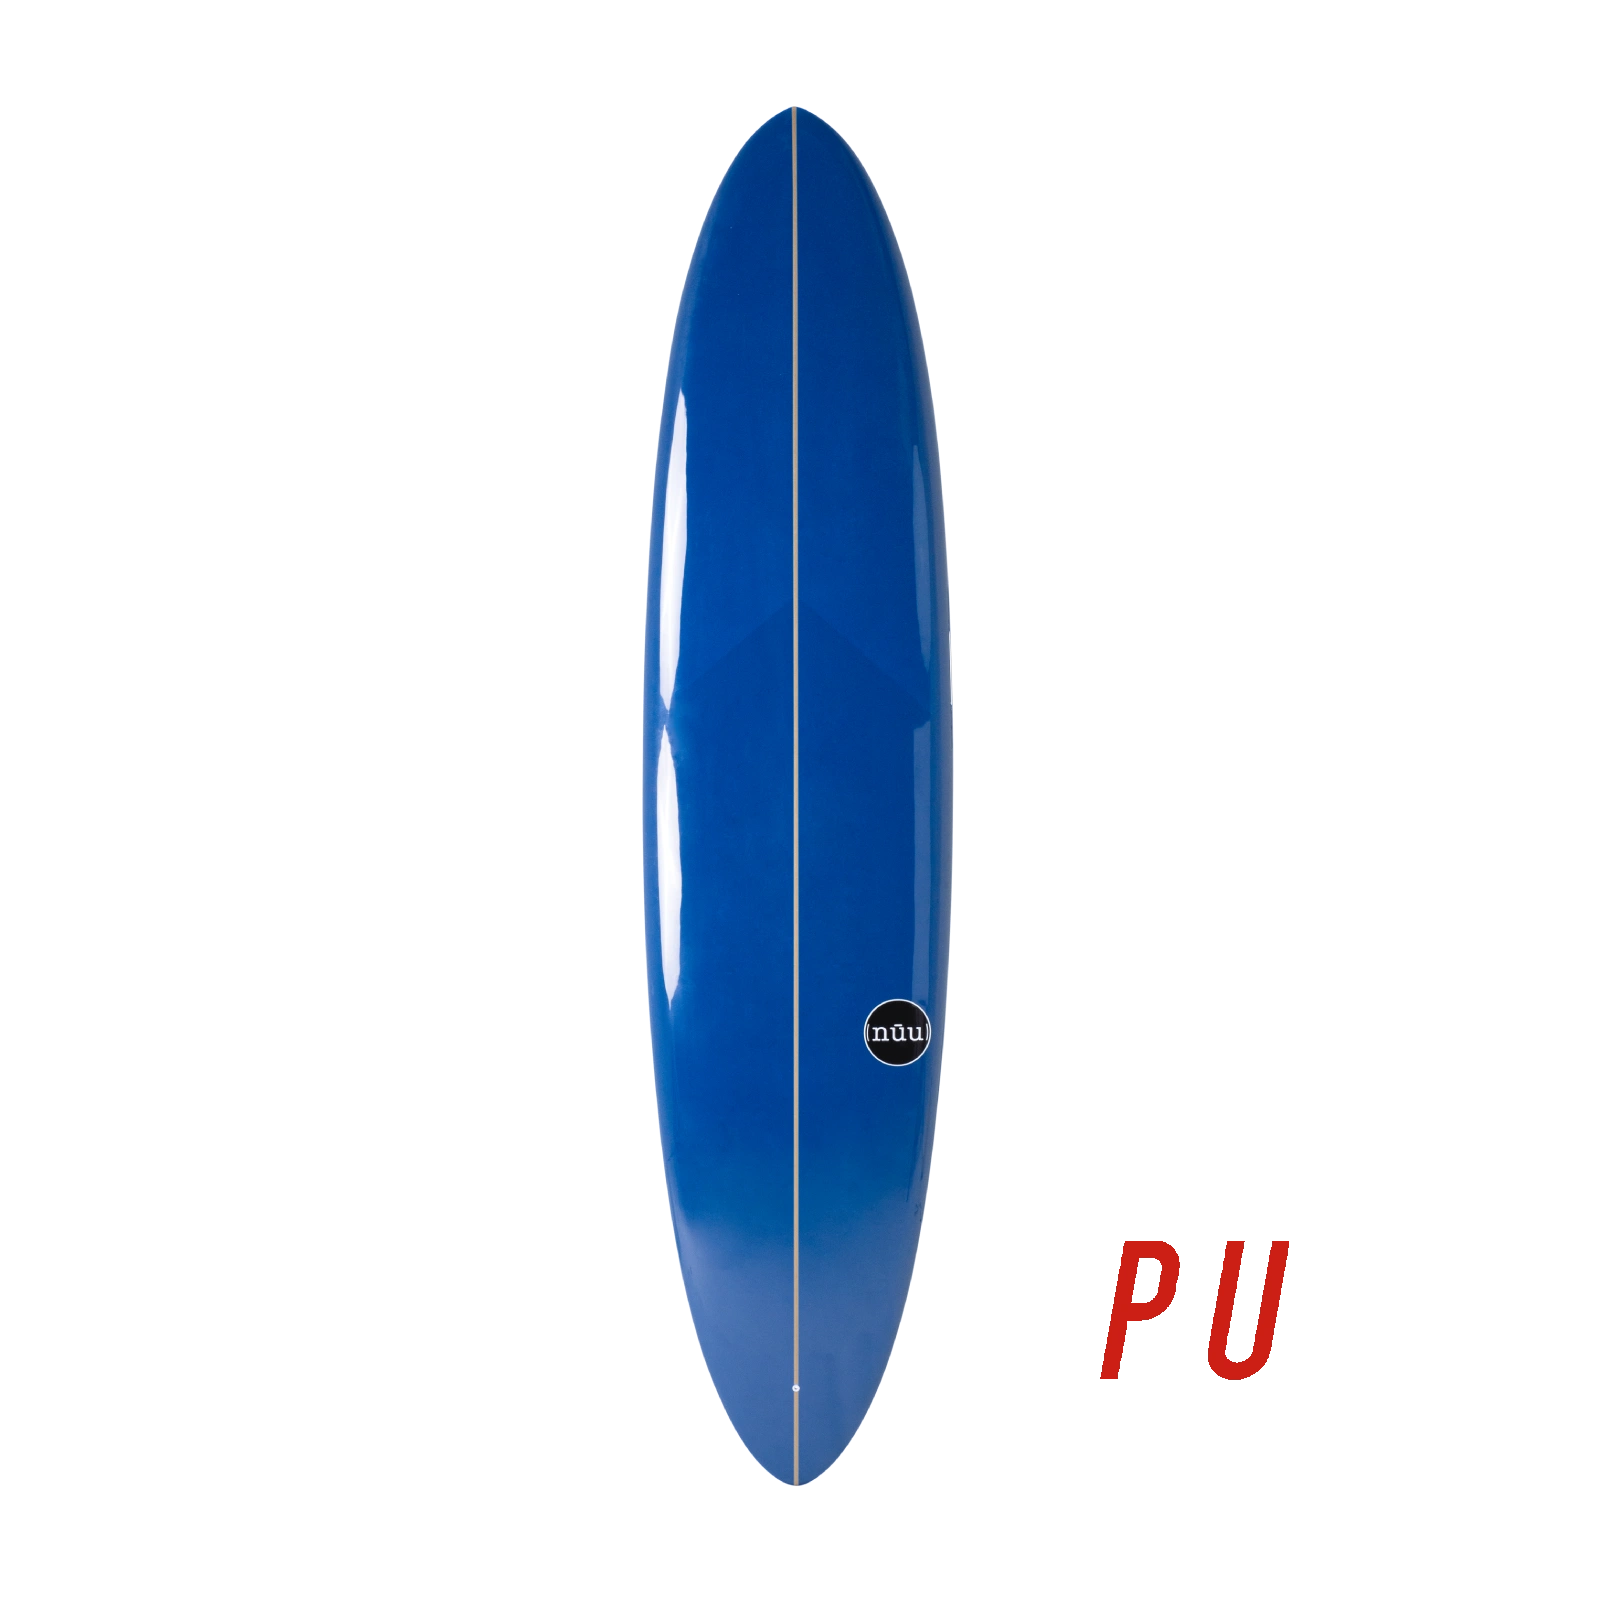 Sociallight PU Nuu 7'6